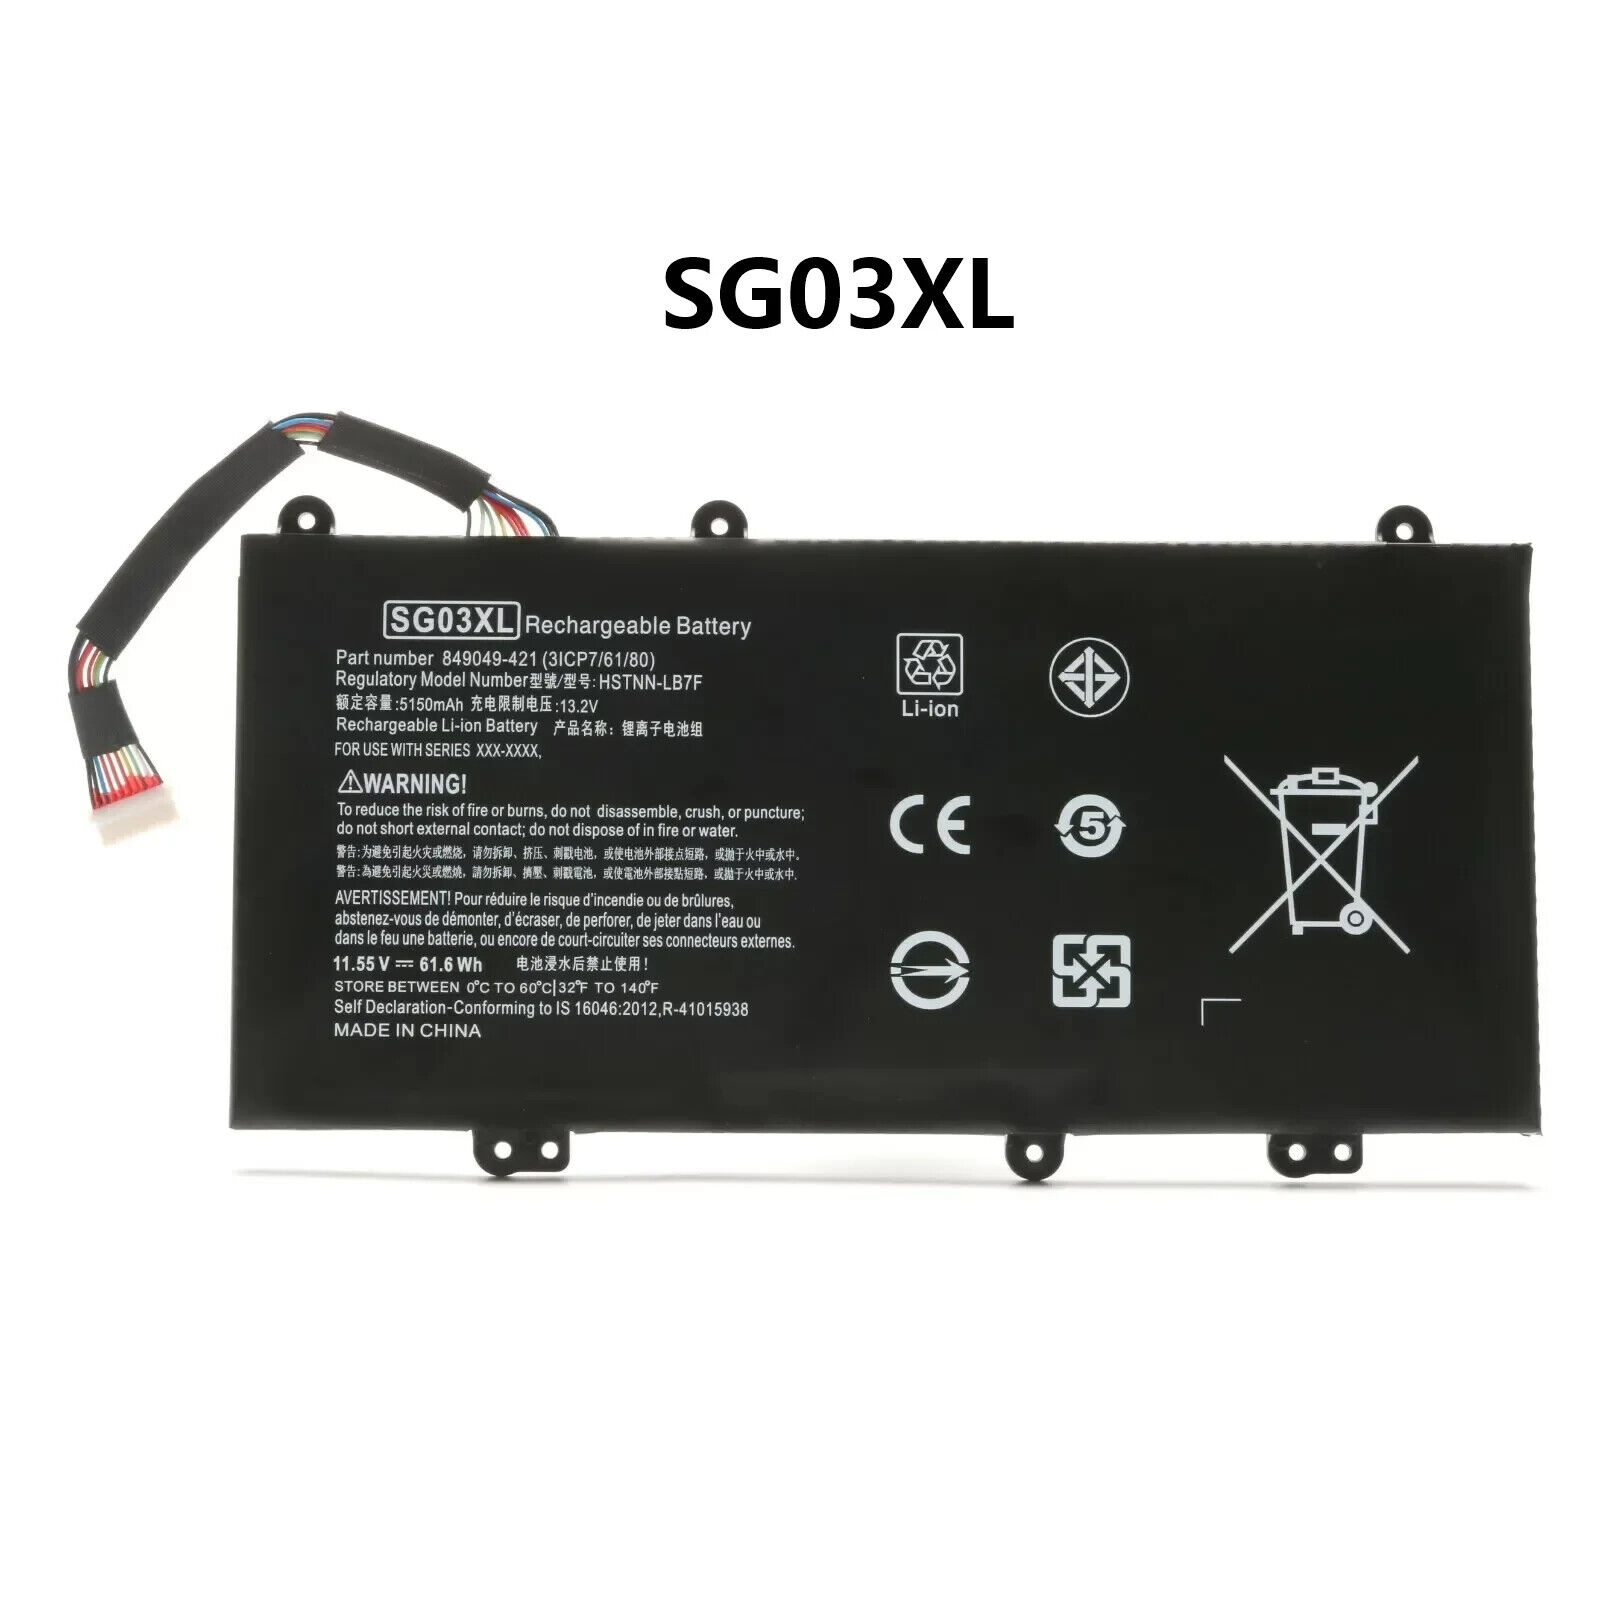 NEW SG03XL Battery For HP Envy 17-U000 M7-U000 17-U275CL U177CL U273CL U163CL